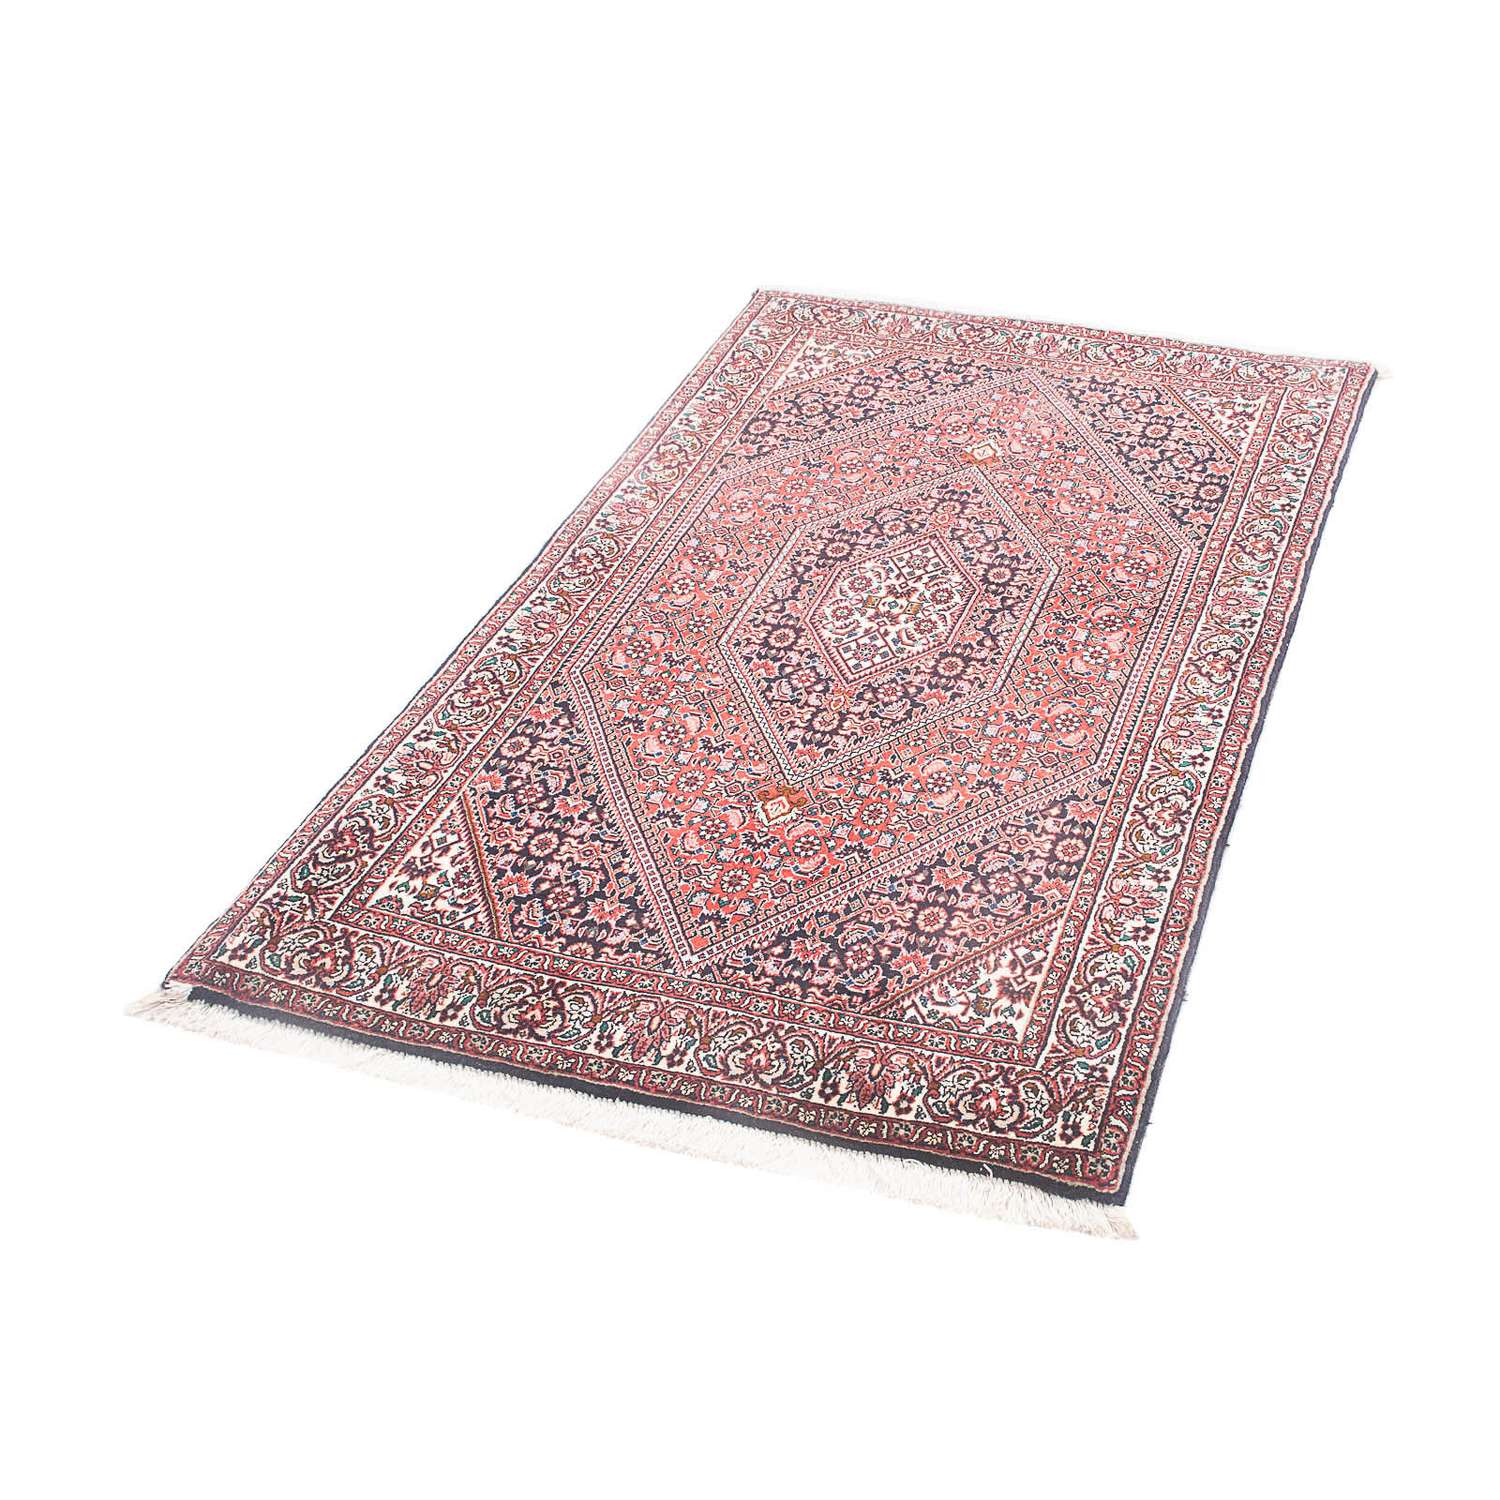 Tapis persan - Bidjar - 151 x 86 cm - rouge clair